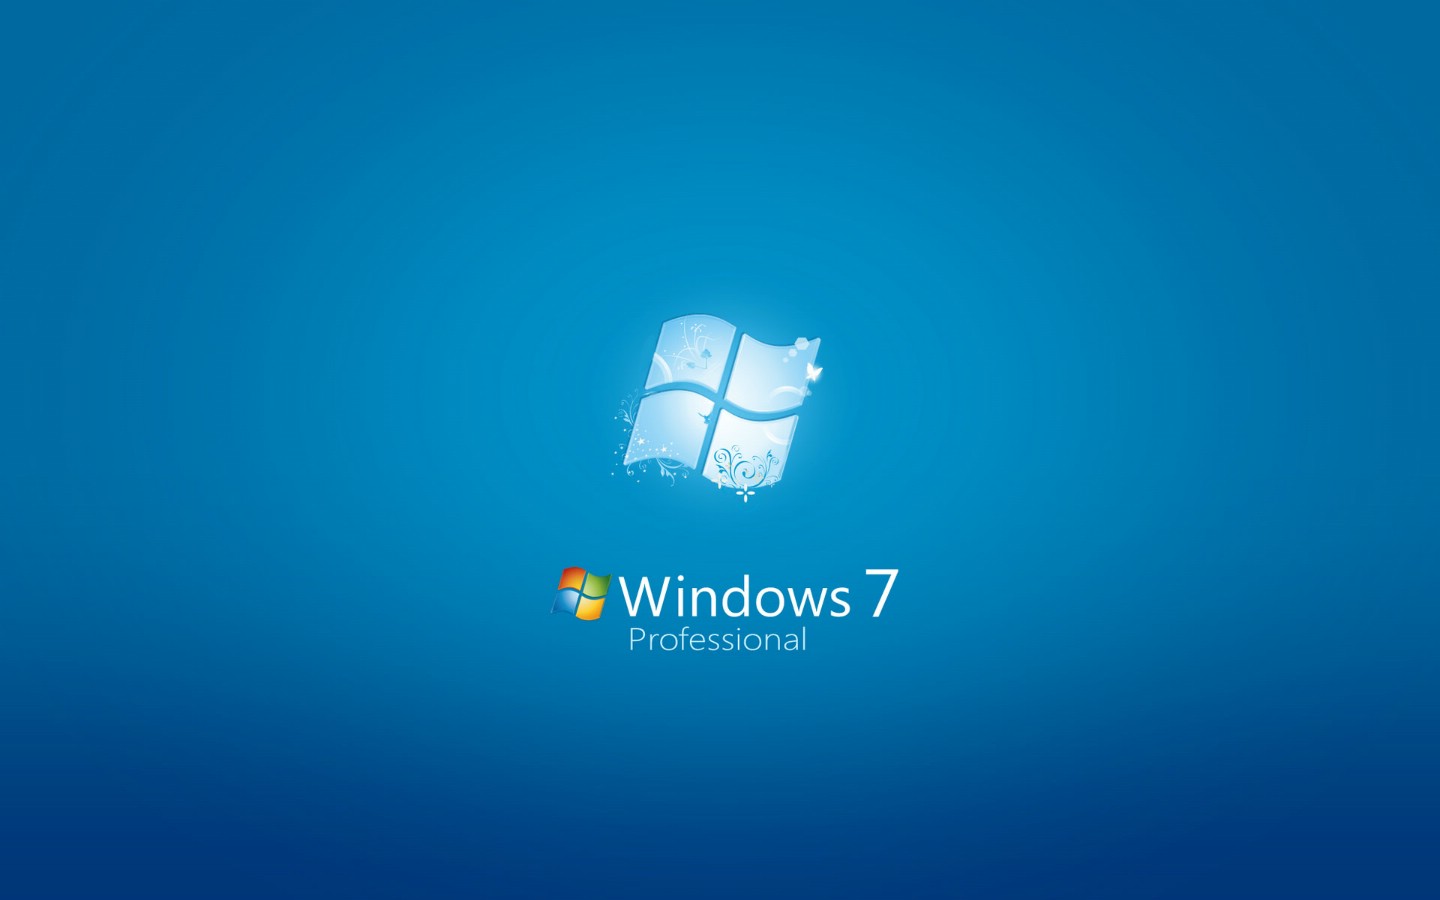 壁纸1440x900Windows 7 正式版壁纸壁纸 Windows 7 正式版壁纸壁纸 Windows 7 正式版壁纸图片 Windows 7 正式版壁纸素材 其他壁纸 其他图库 其他图片素材桌面壁纸